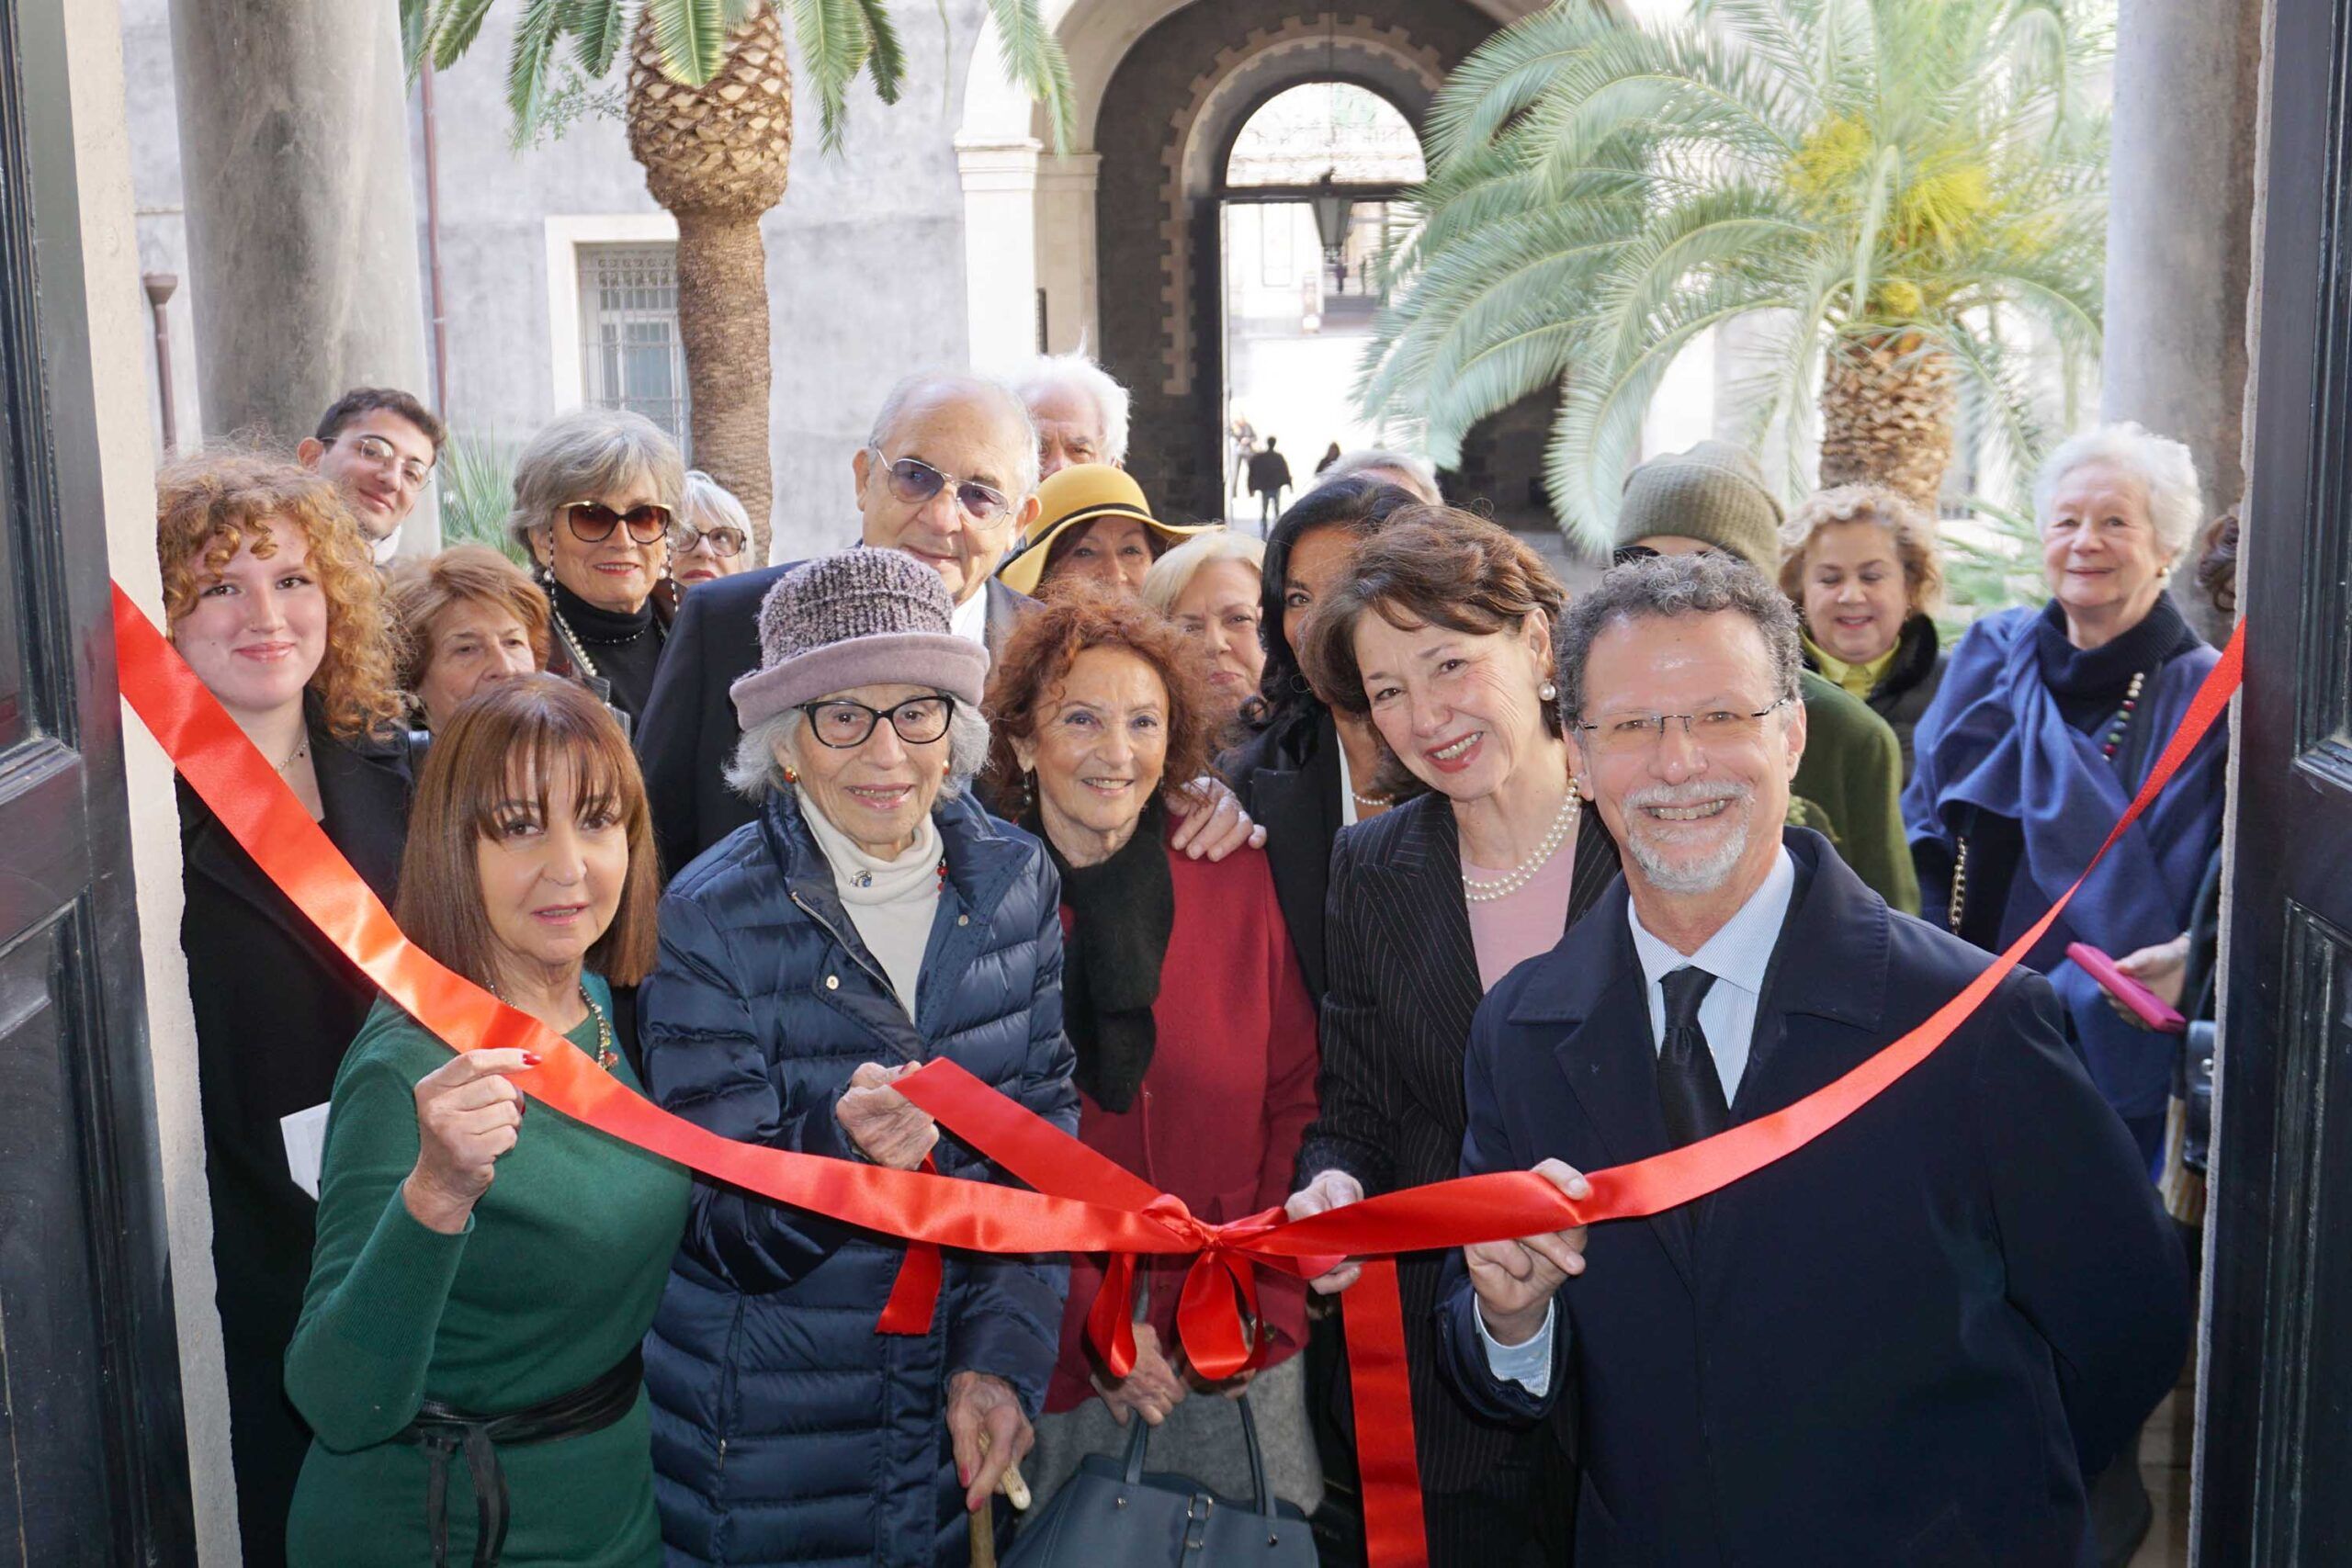 A Catania una mostra sulle architetture fortificate celebra il “Premio Salvatore Boscarino”